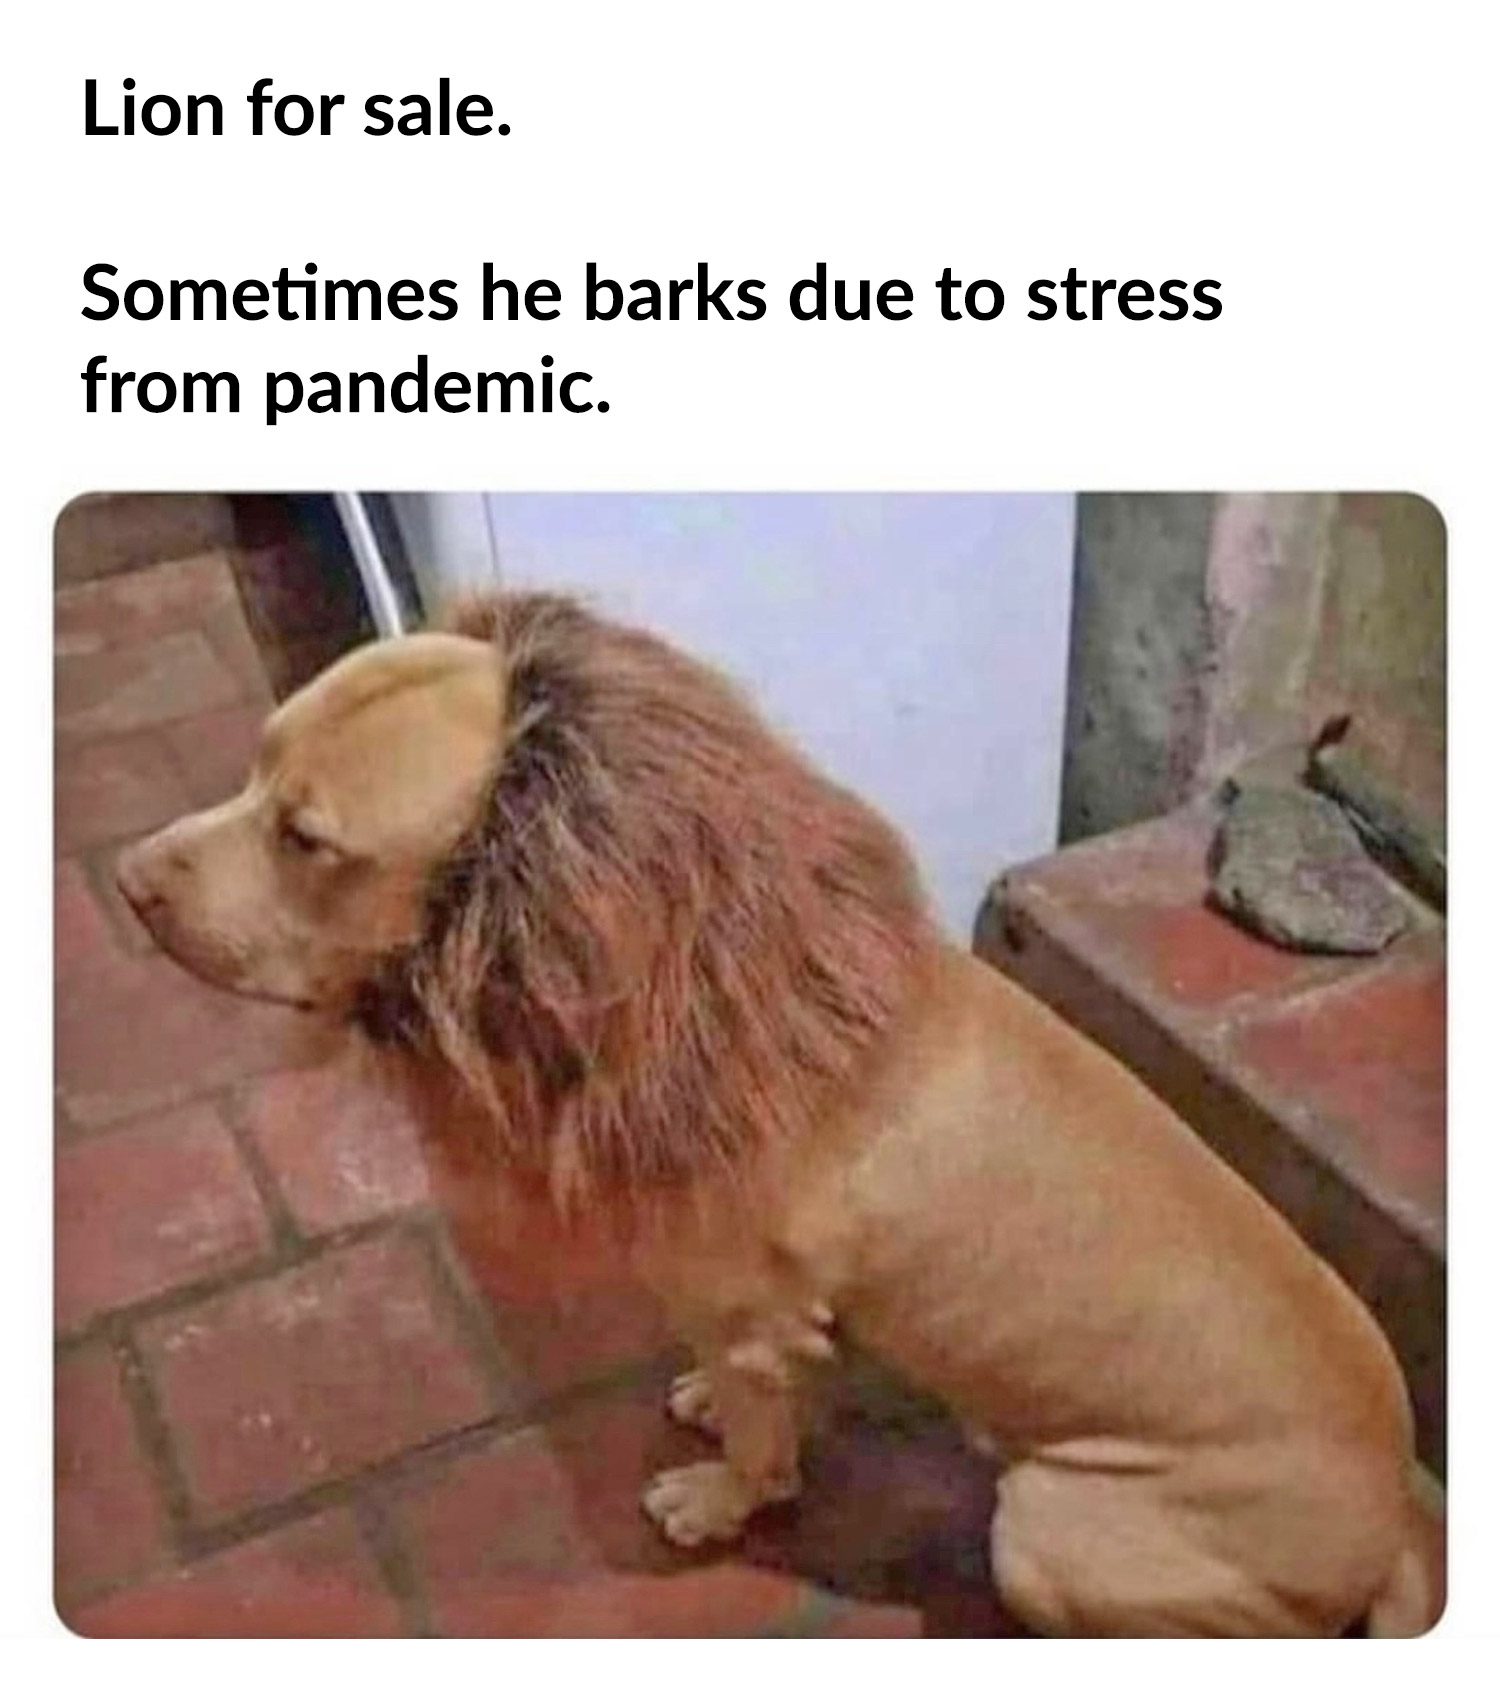 Dog Lion Mane Costume - Dog lion wig